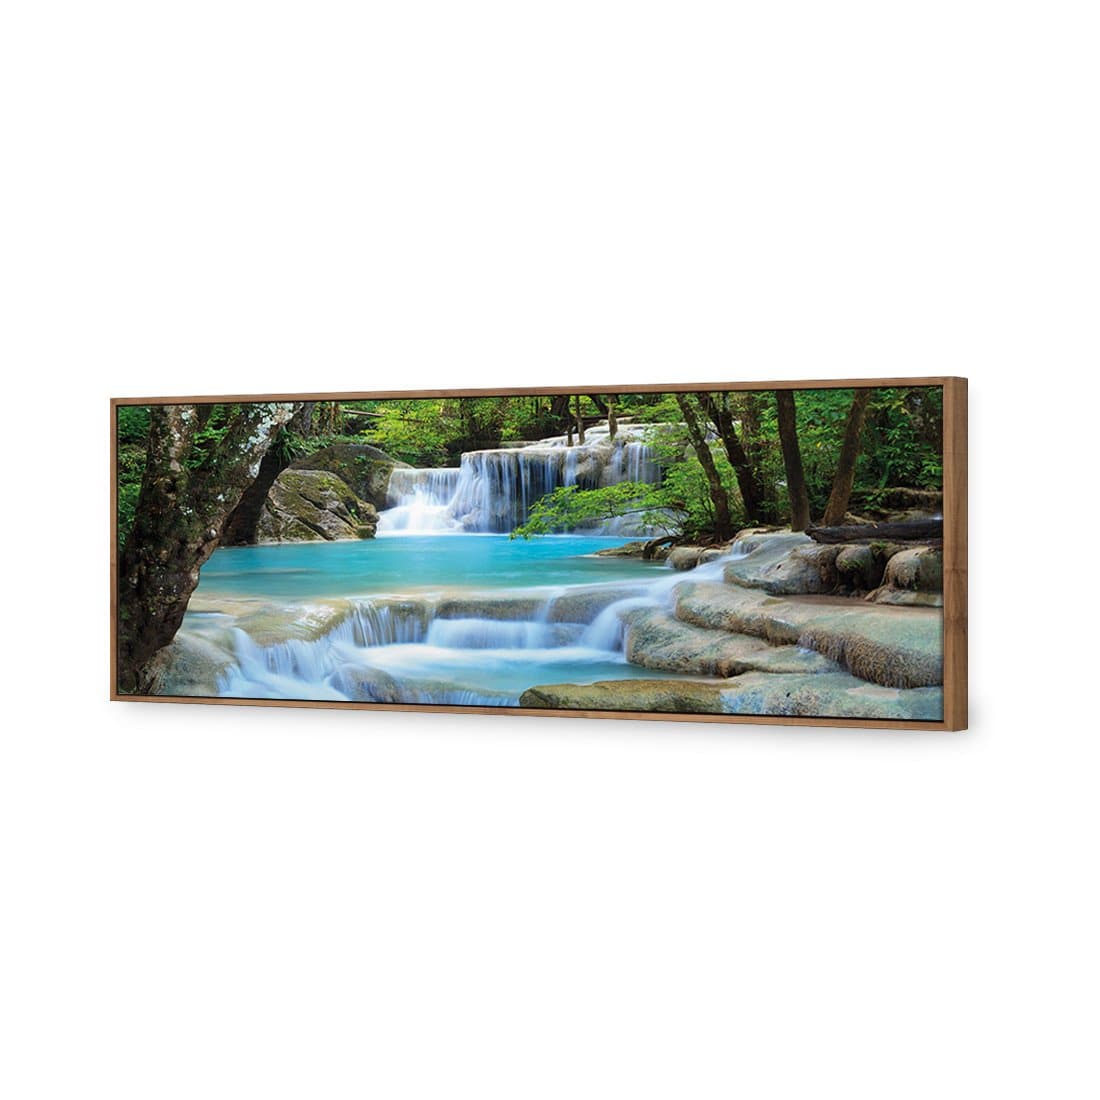 Soft Waterfalls Canvas Art-Canvas-Wall Art Designs-60x20cm-Canvas - Natural Frame-Wall Art Designs